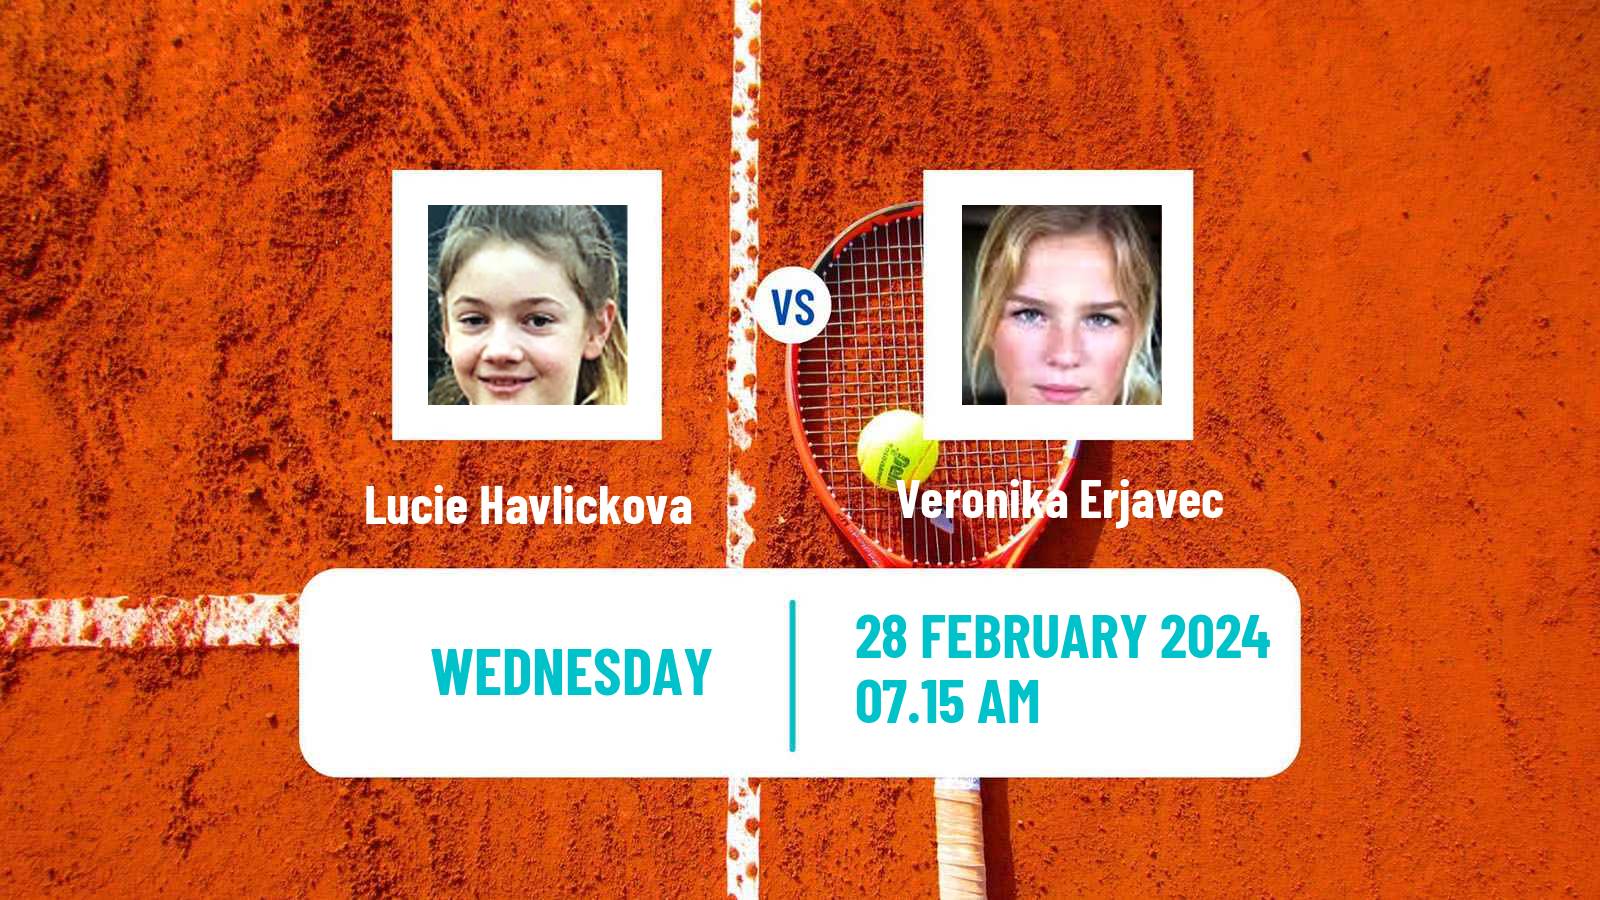 Tennis ITF W50 Trnava Women Lucie Havlickova - Veronika Erjavec